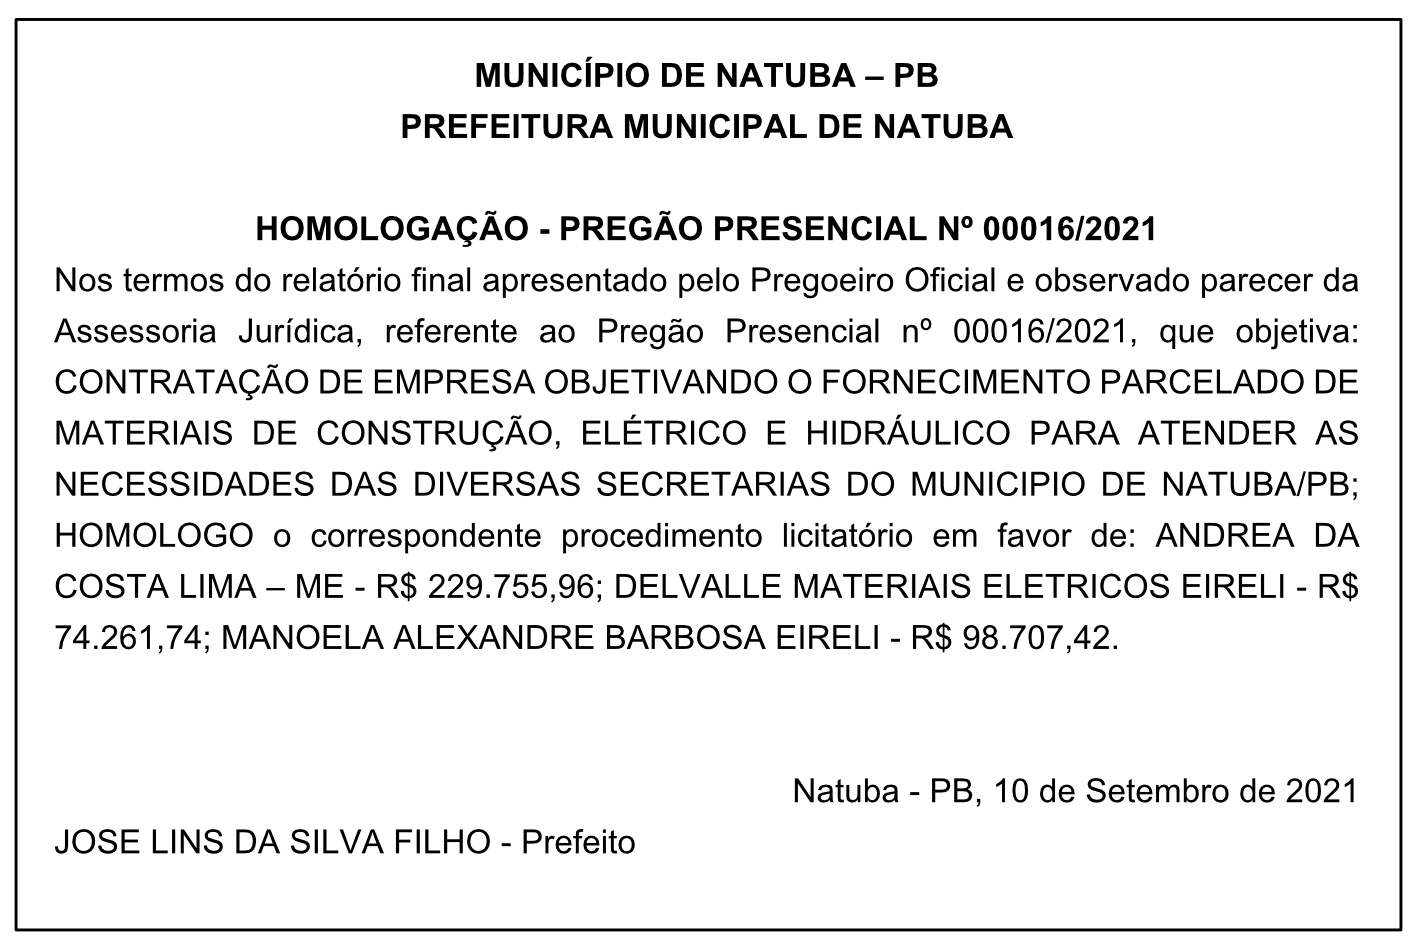 PREFEITURA MUNICIPAL DE NATUBA – HOMOLOGAÇÃO – PREGÃO PRESENCIAL Nº 00016/2021